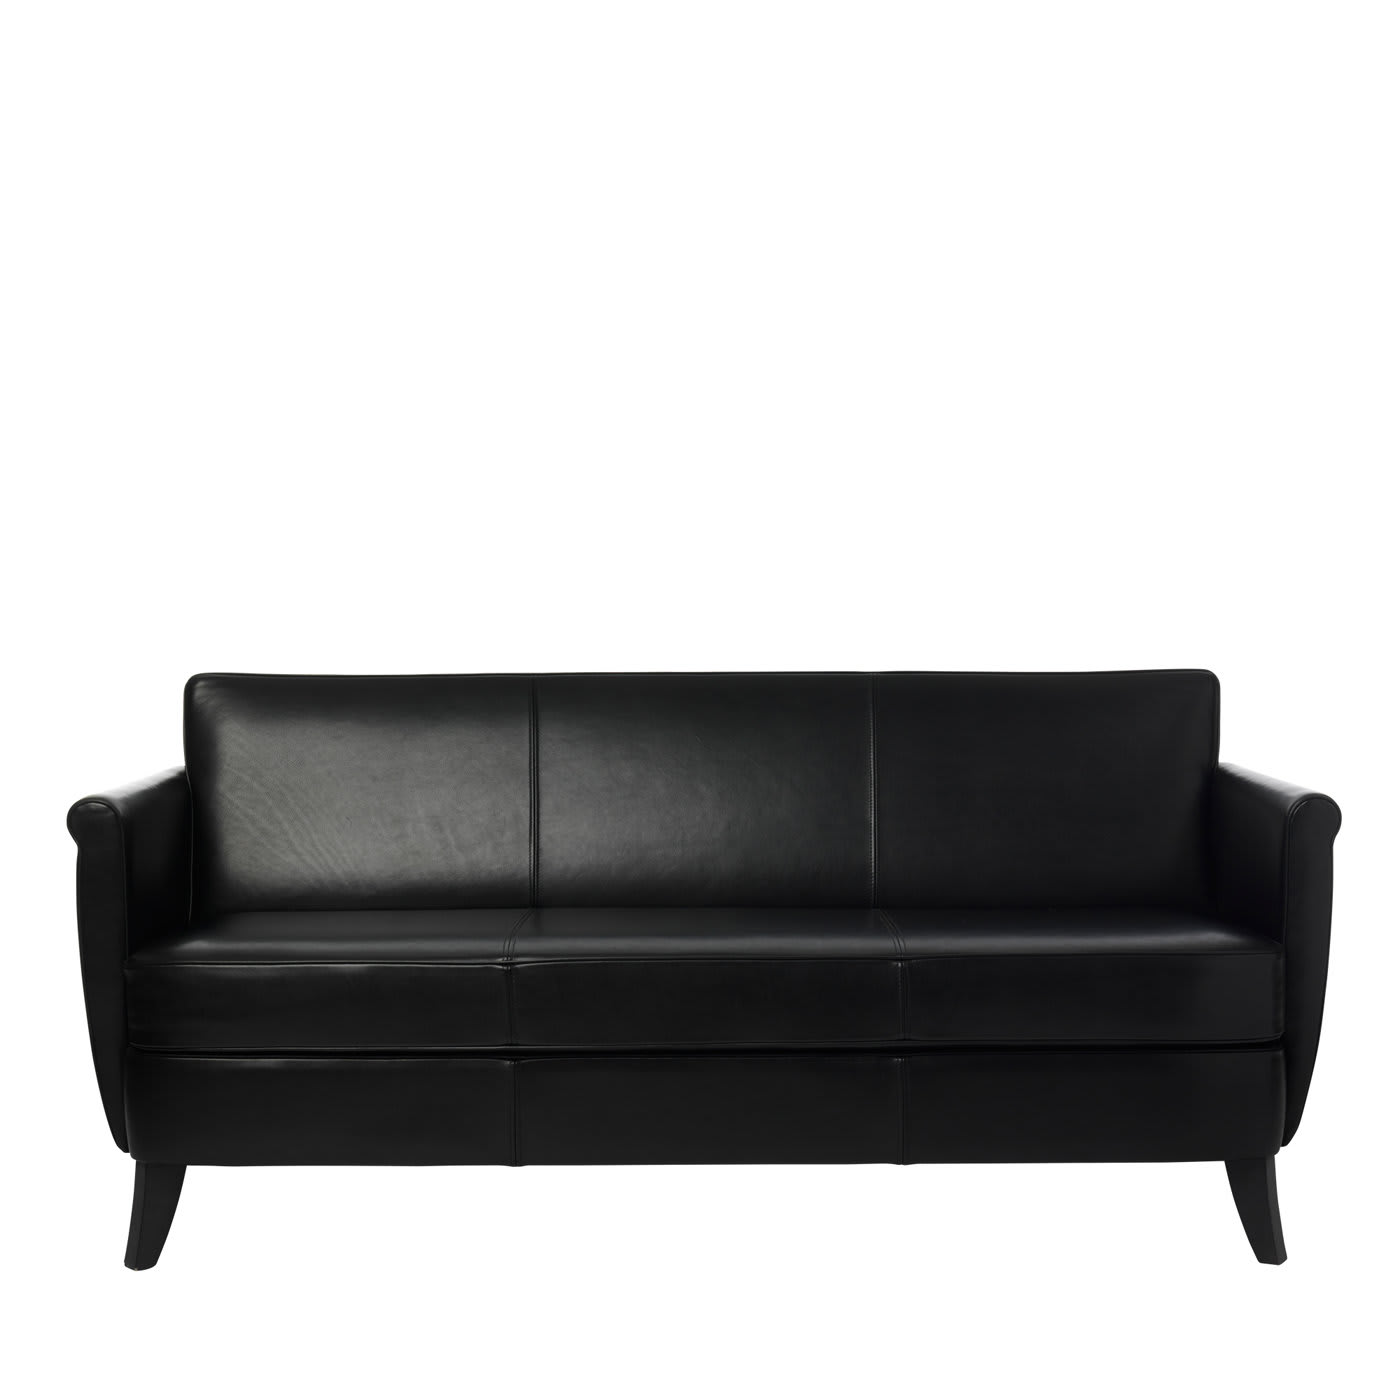 Undersized Black Leather Sofa by Maison Margiela - Baleri Italia